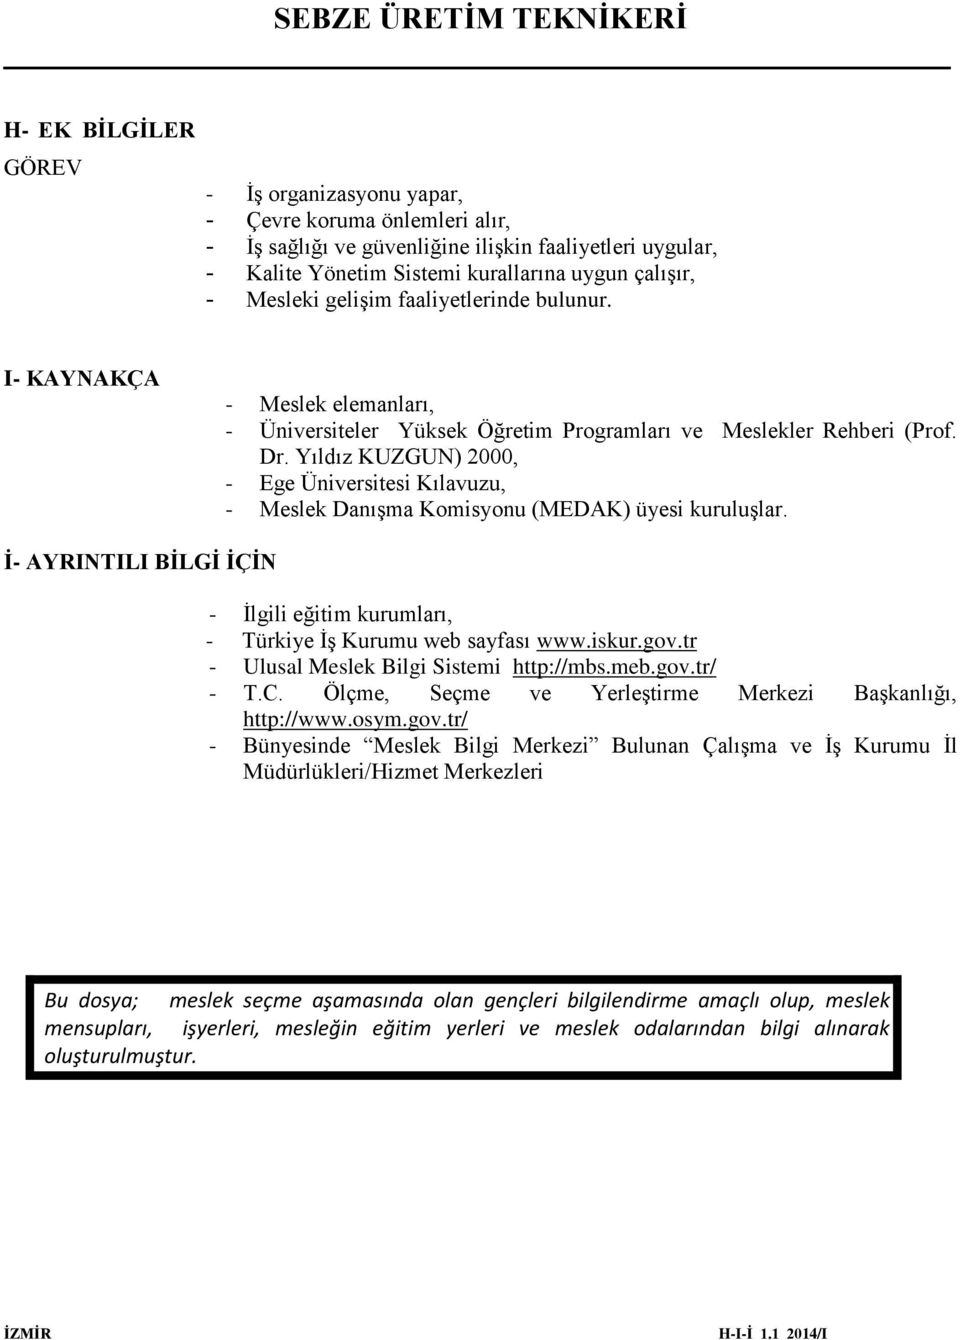 Yıldız KUZGUN) 2000, - Ege Üniversitesi Kılavuzu, - Meslek Danışma Komisyonu (MEDAK) üyesi kuruluşlar. İ- AYRINTILI BİLGİ İÇİN - İlgili eğitim kurumları, - Türkiye İş Kurumu web sayfası www.iskur.gov.